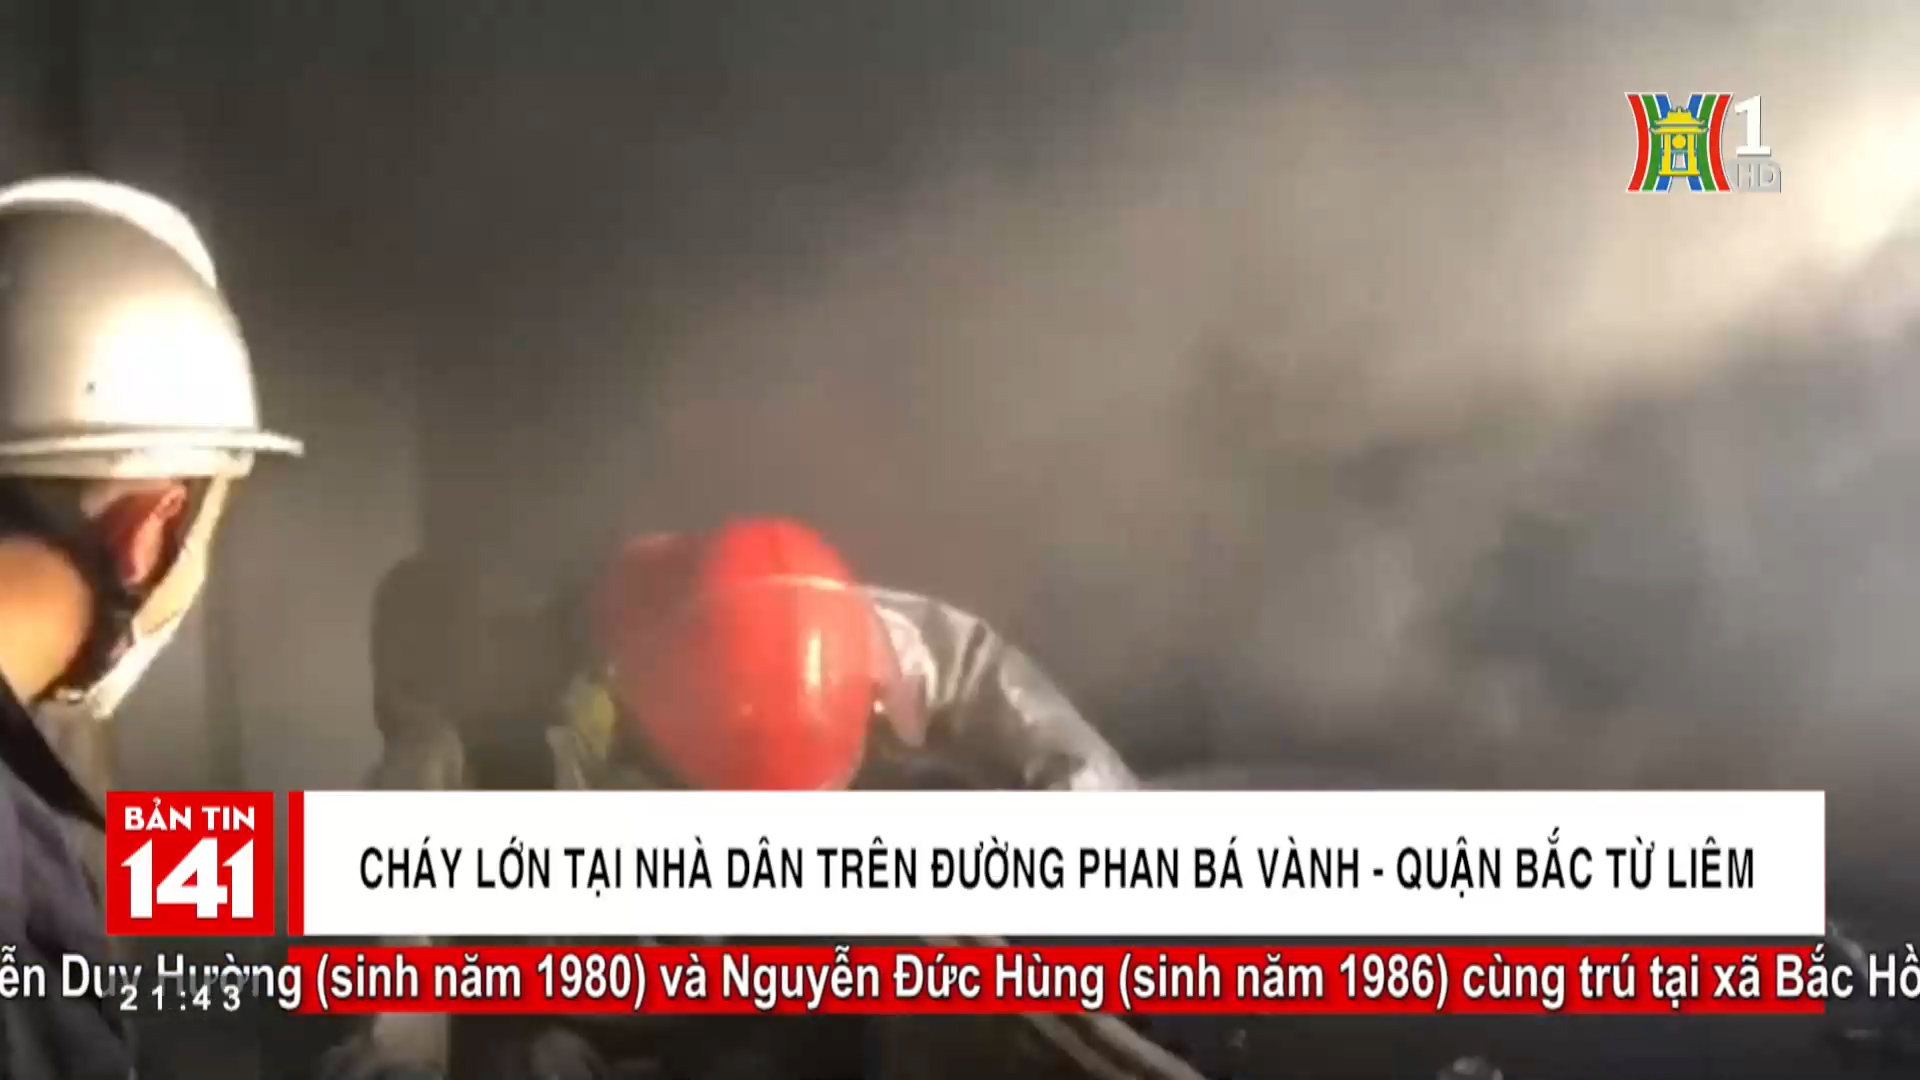 Cháy lớn tại nhà dân trên đường Phan Bá Vành quận Bắc Từ Liêm